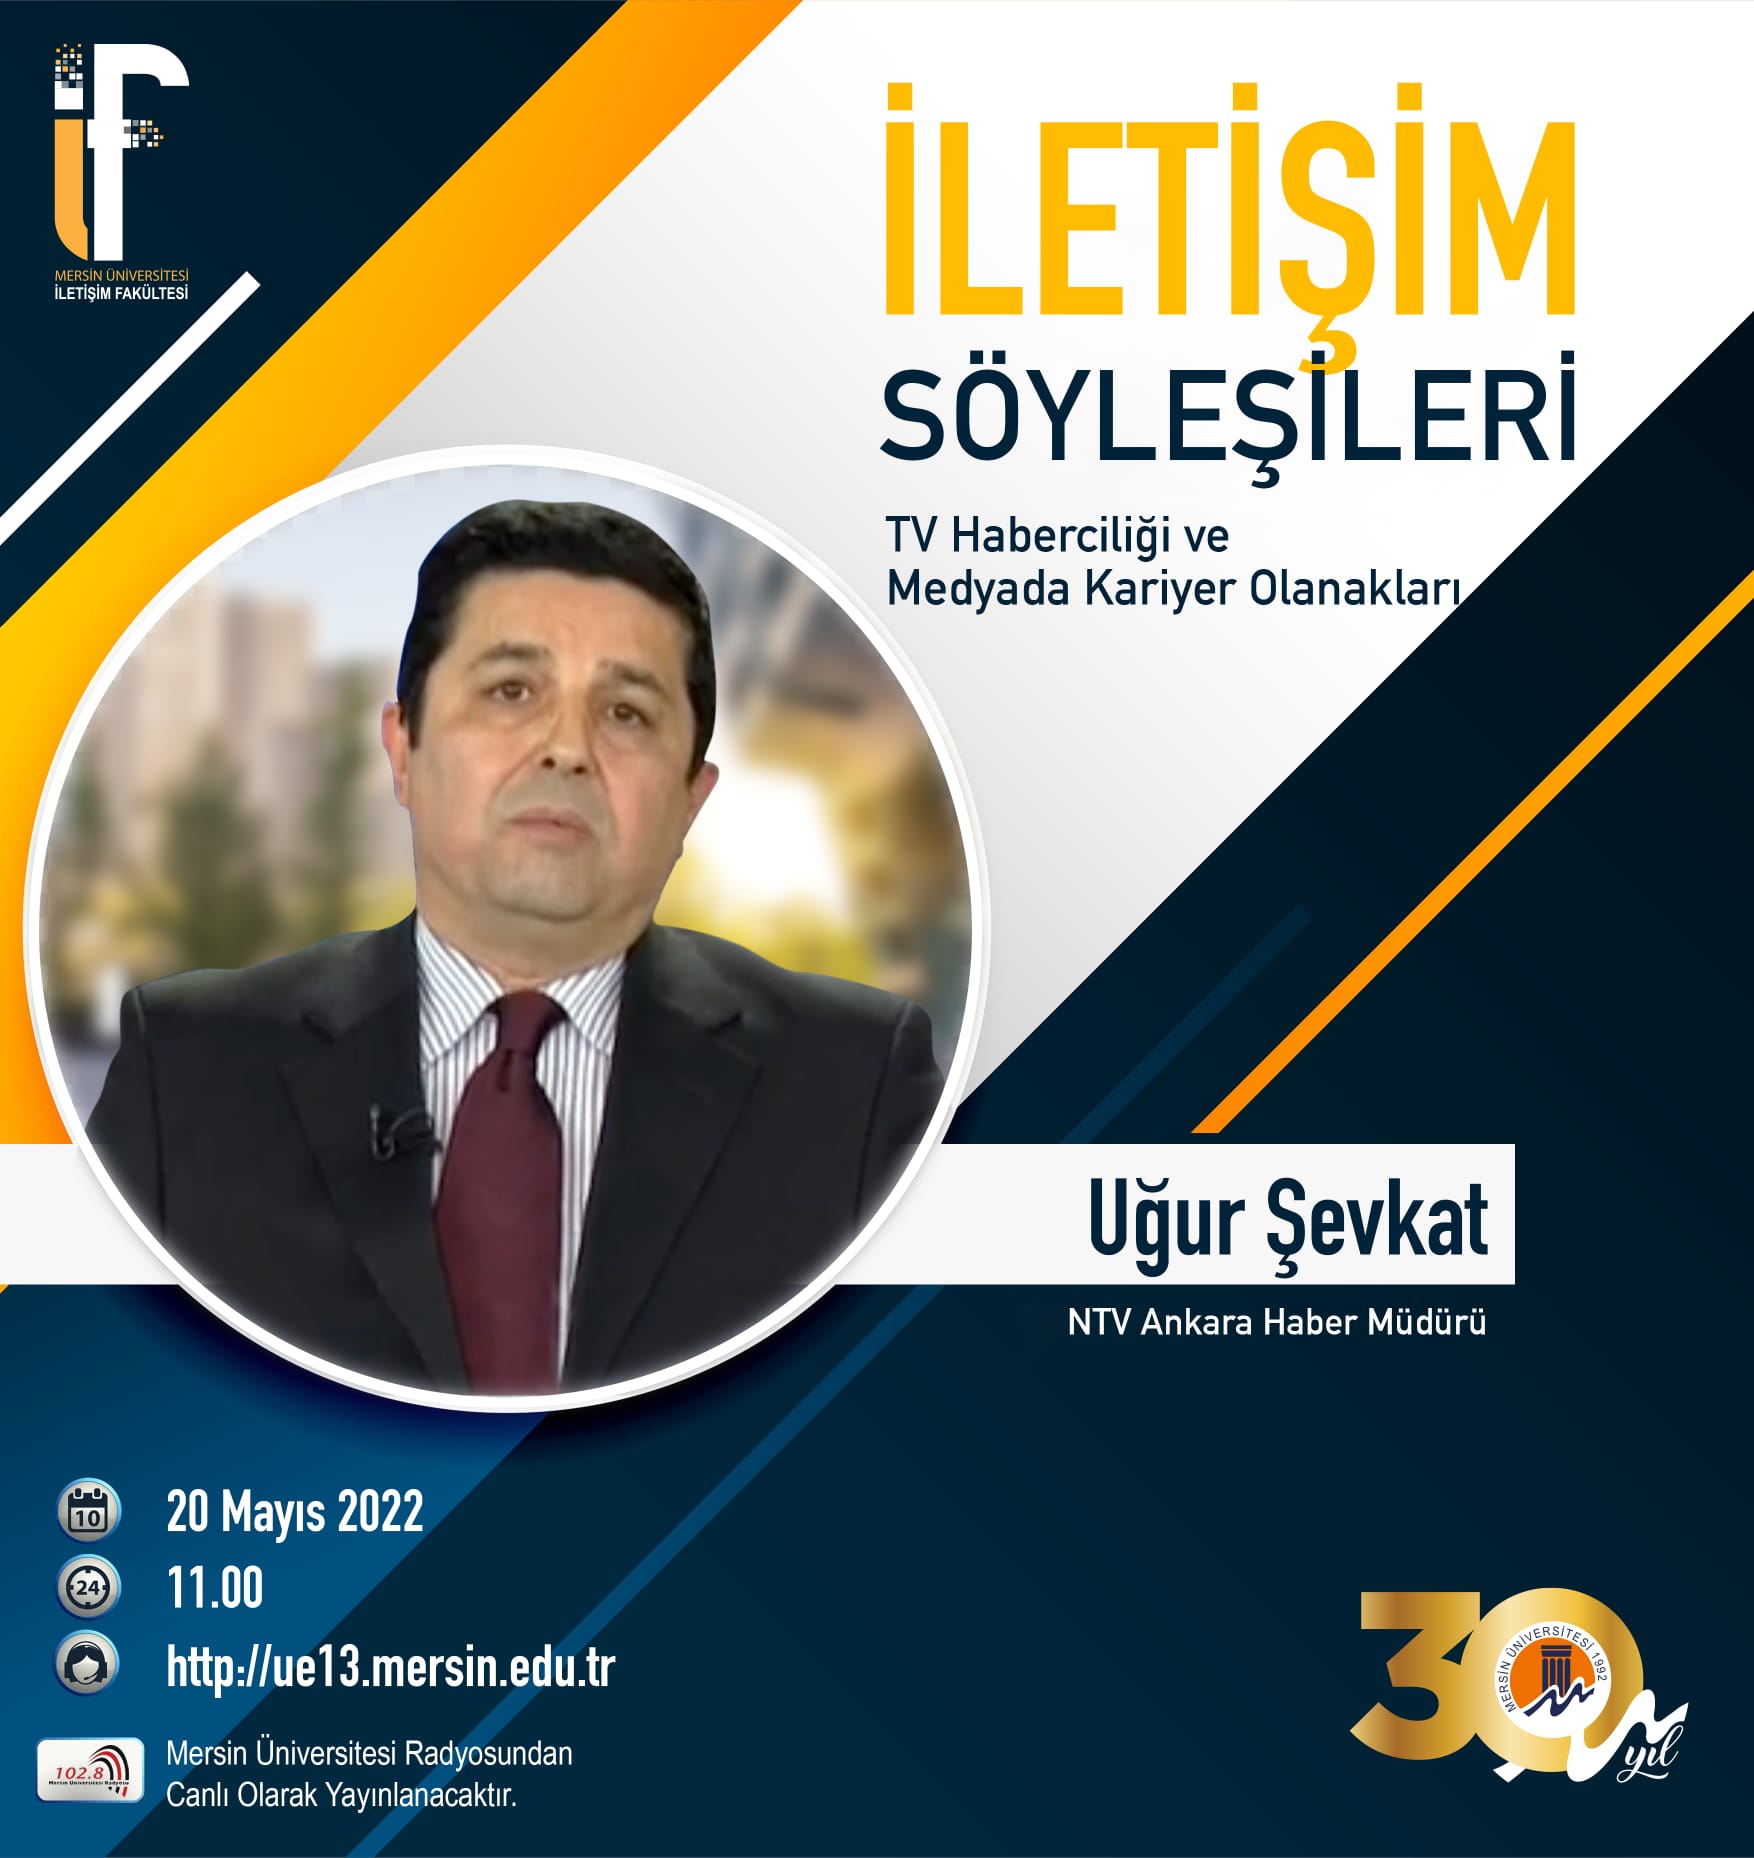 NTV Ankara Haber Müdürü Uğur Şevkat MEÜ İletişim Fakültesi Programı